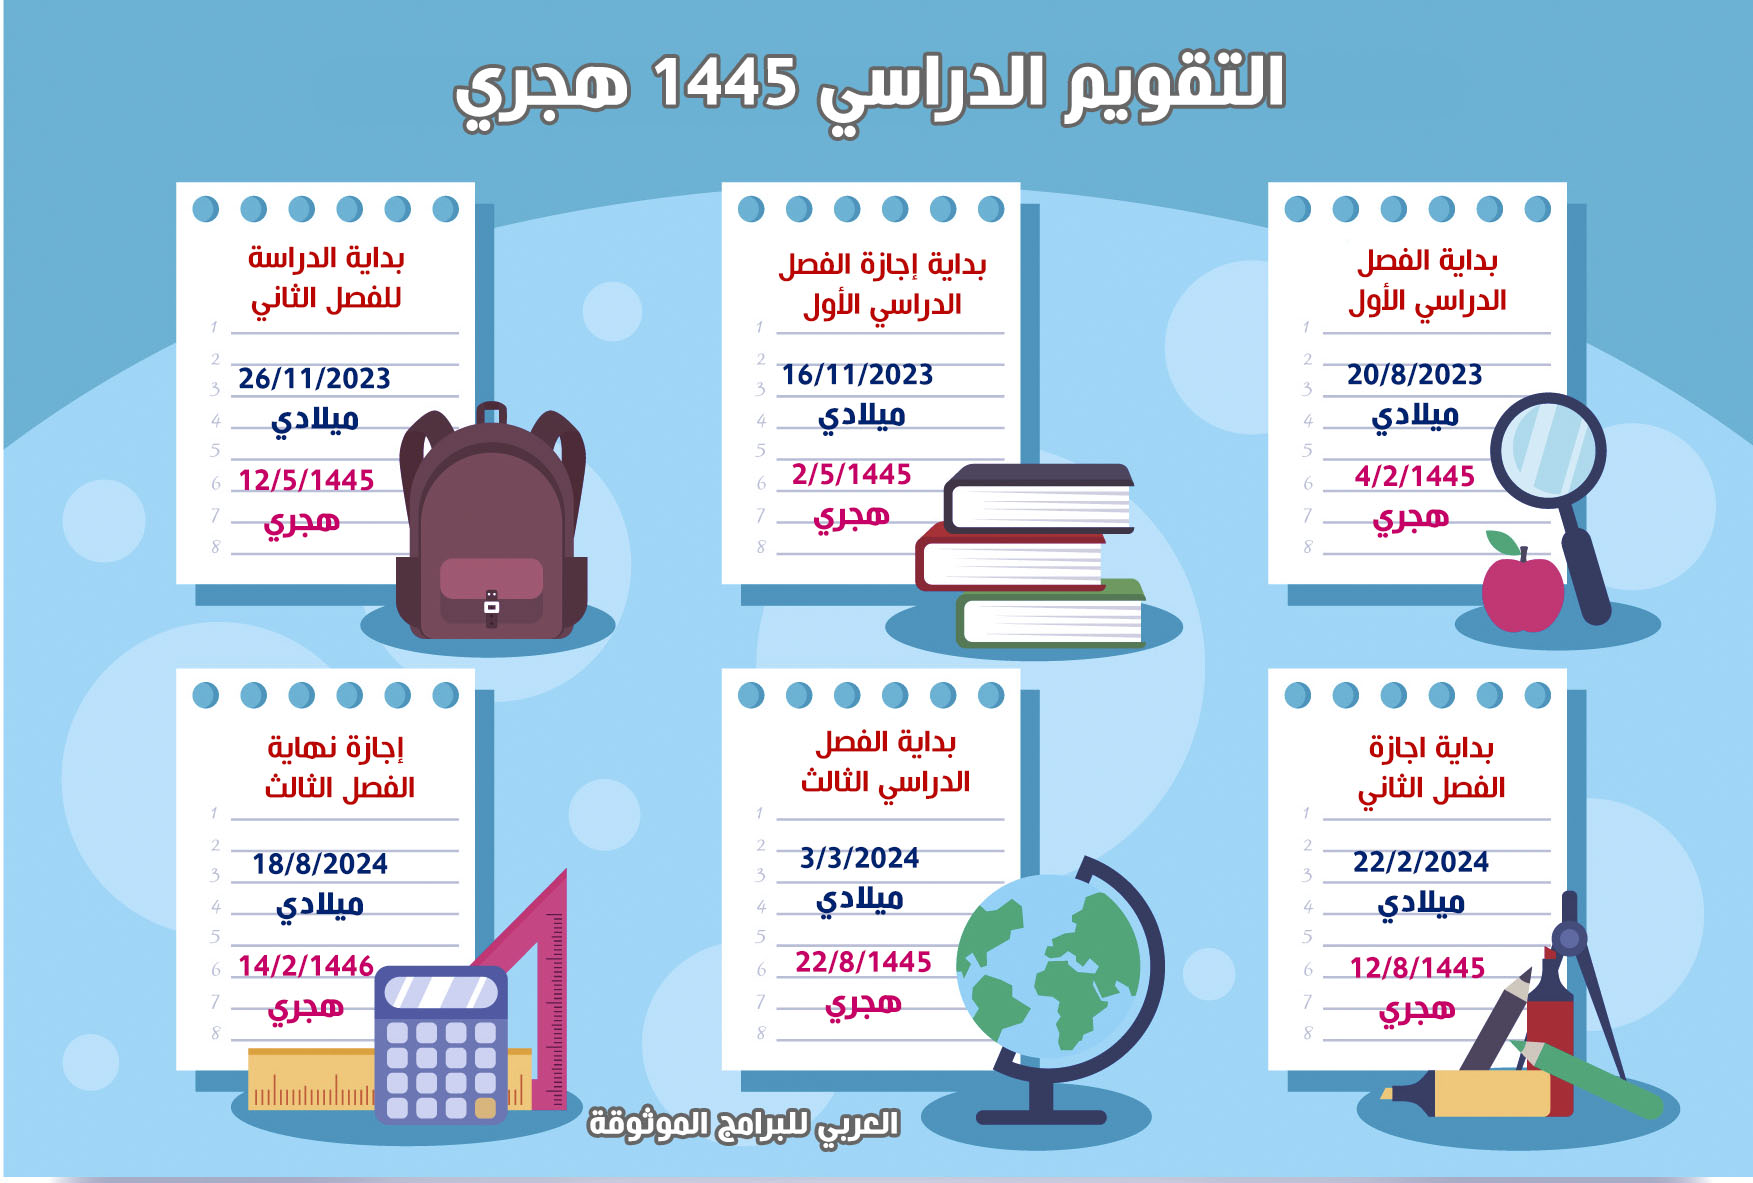 تنزيل التقويم الدراسي 1445 pdf في السعودية تقويم الدراسي ١٤٤٥ بعد التعديل